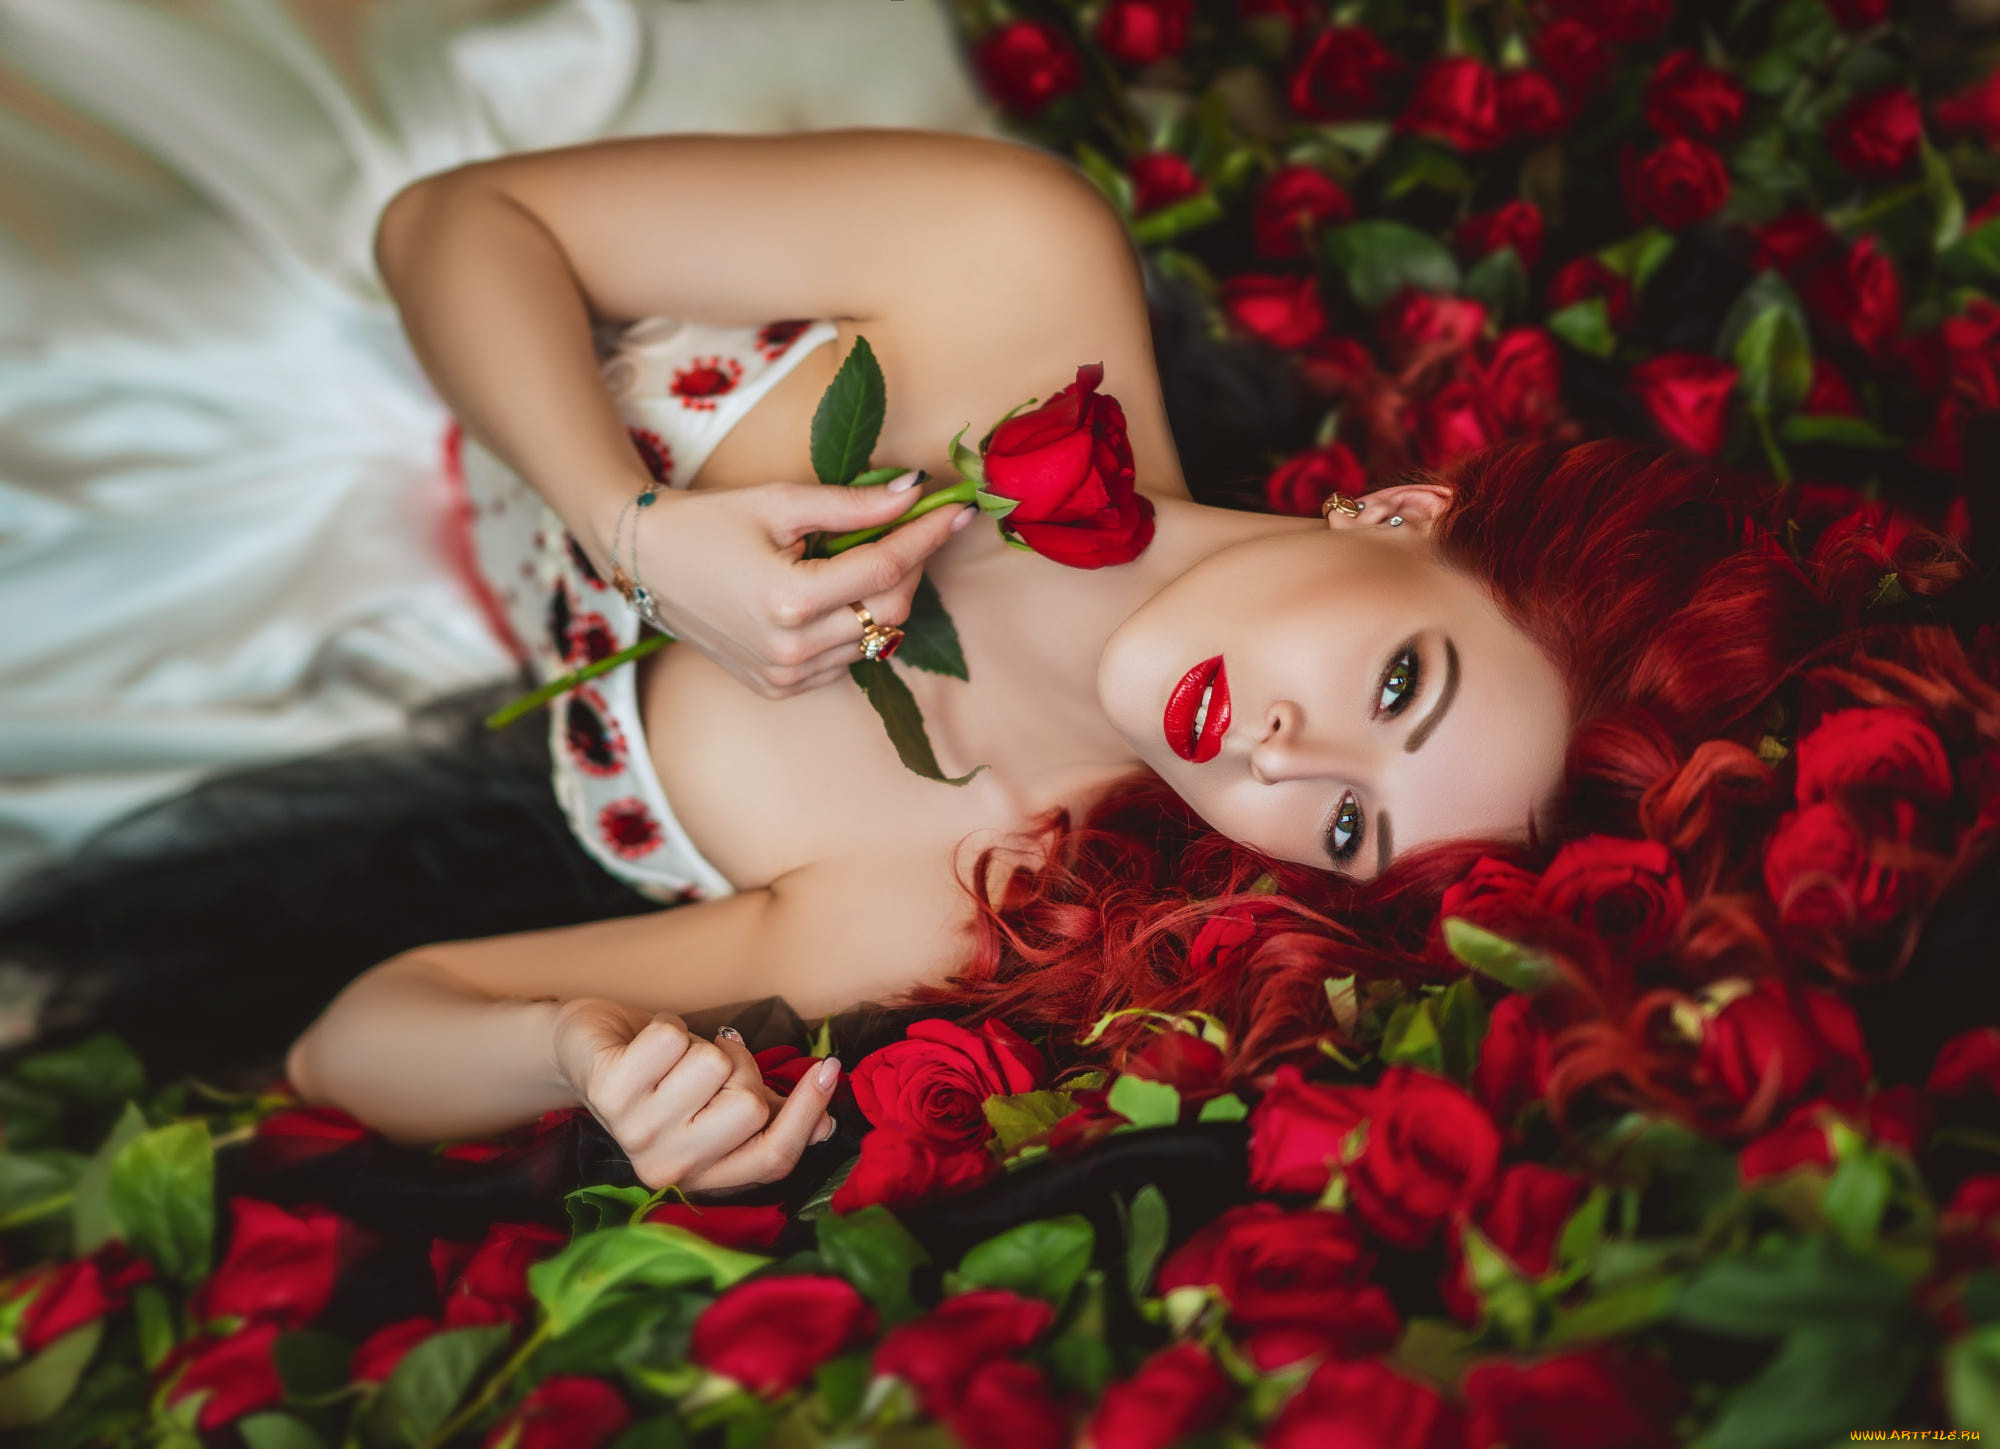 Бестия видео. Рыжая девушка с красными розами. Рыжеволосая девушка в ванной с красным маникюром.